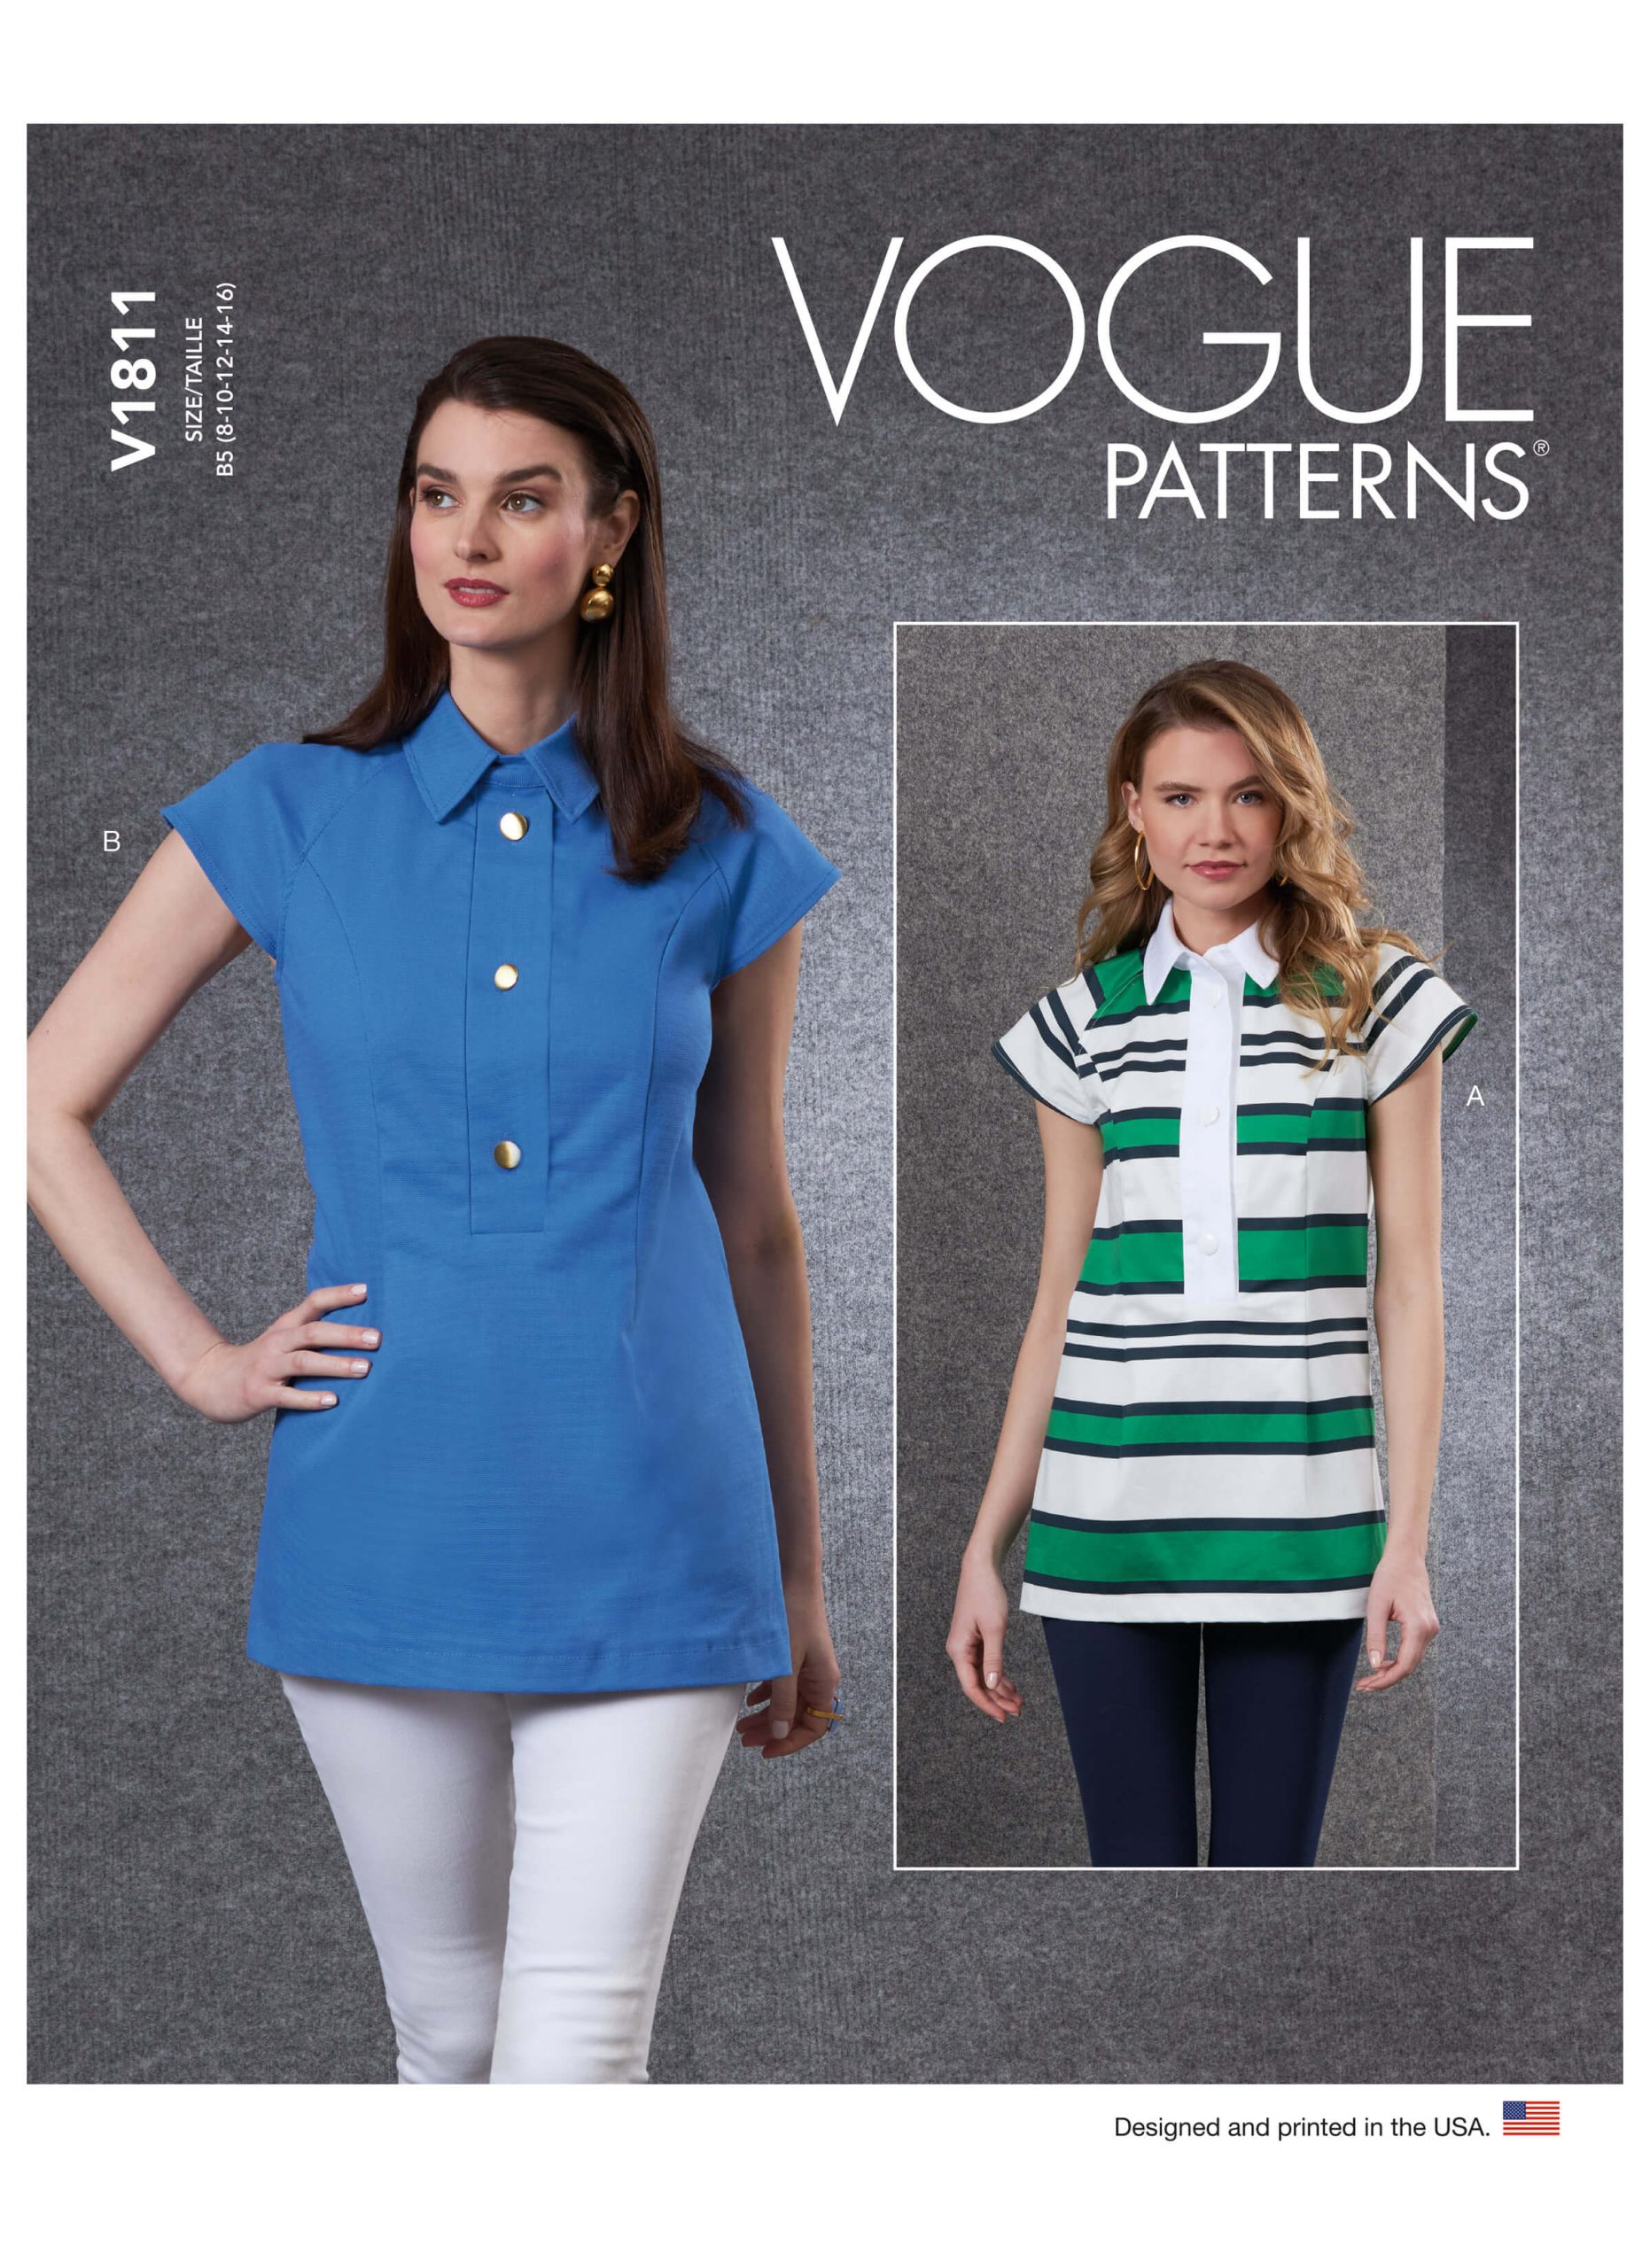 Vogue Patterns V1811 Misses' Tops